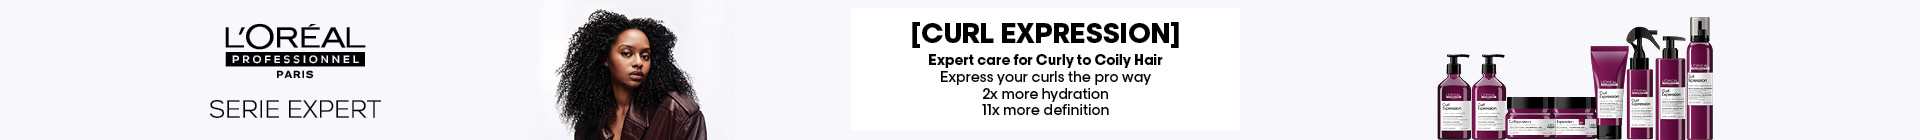 cat-banner-lp-curl-expression | L'Oréal Partner Shop